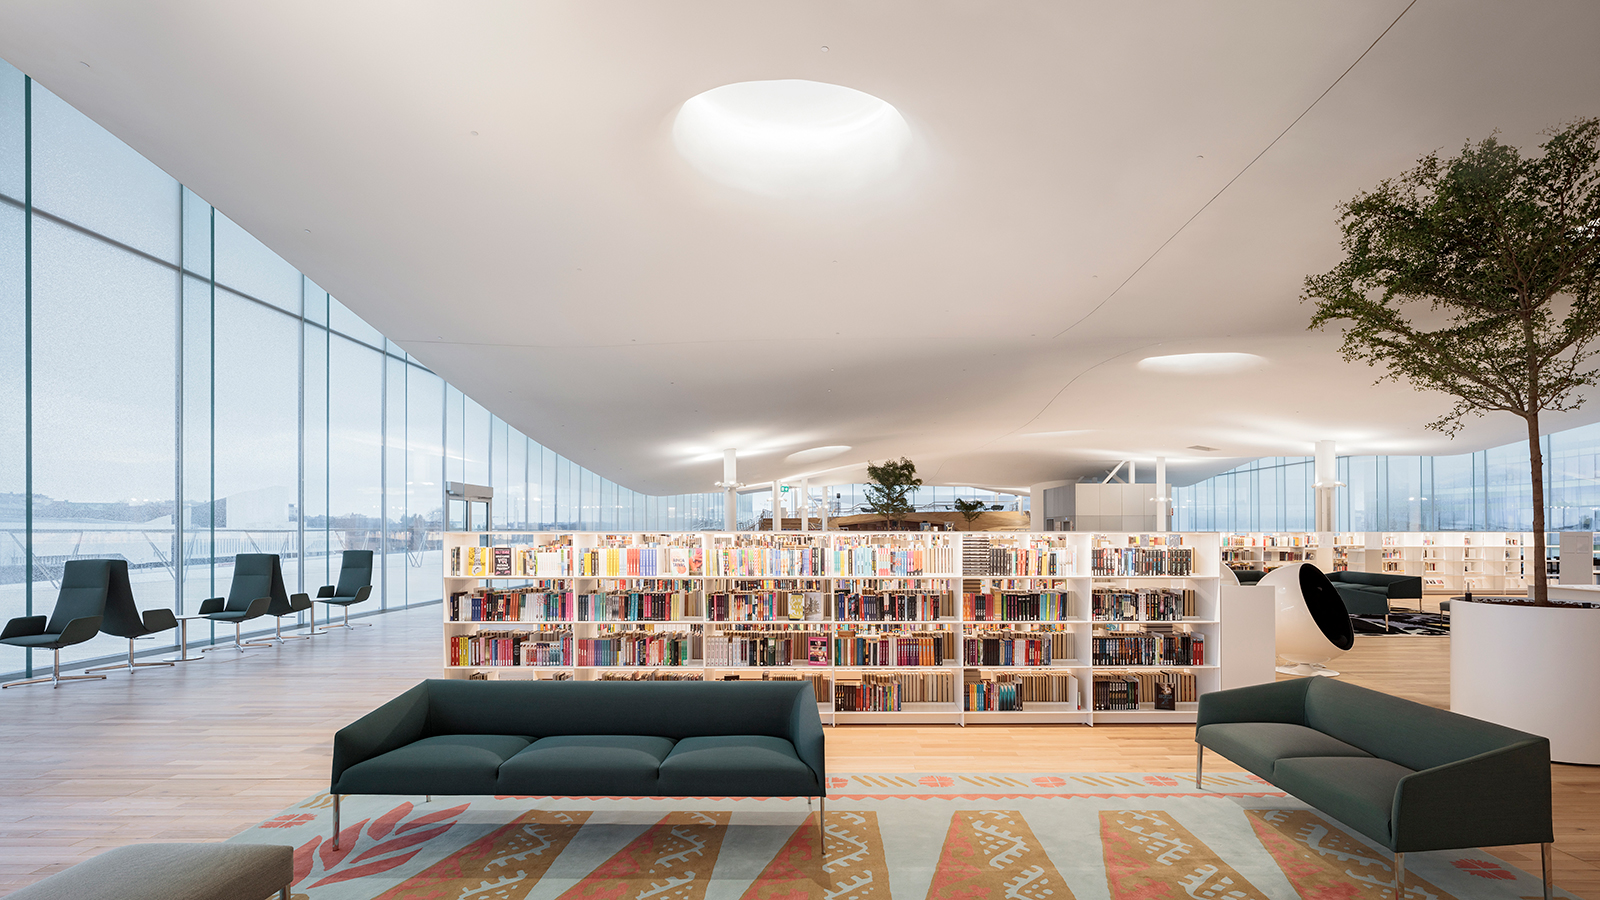 Oodi library in Helsinki